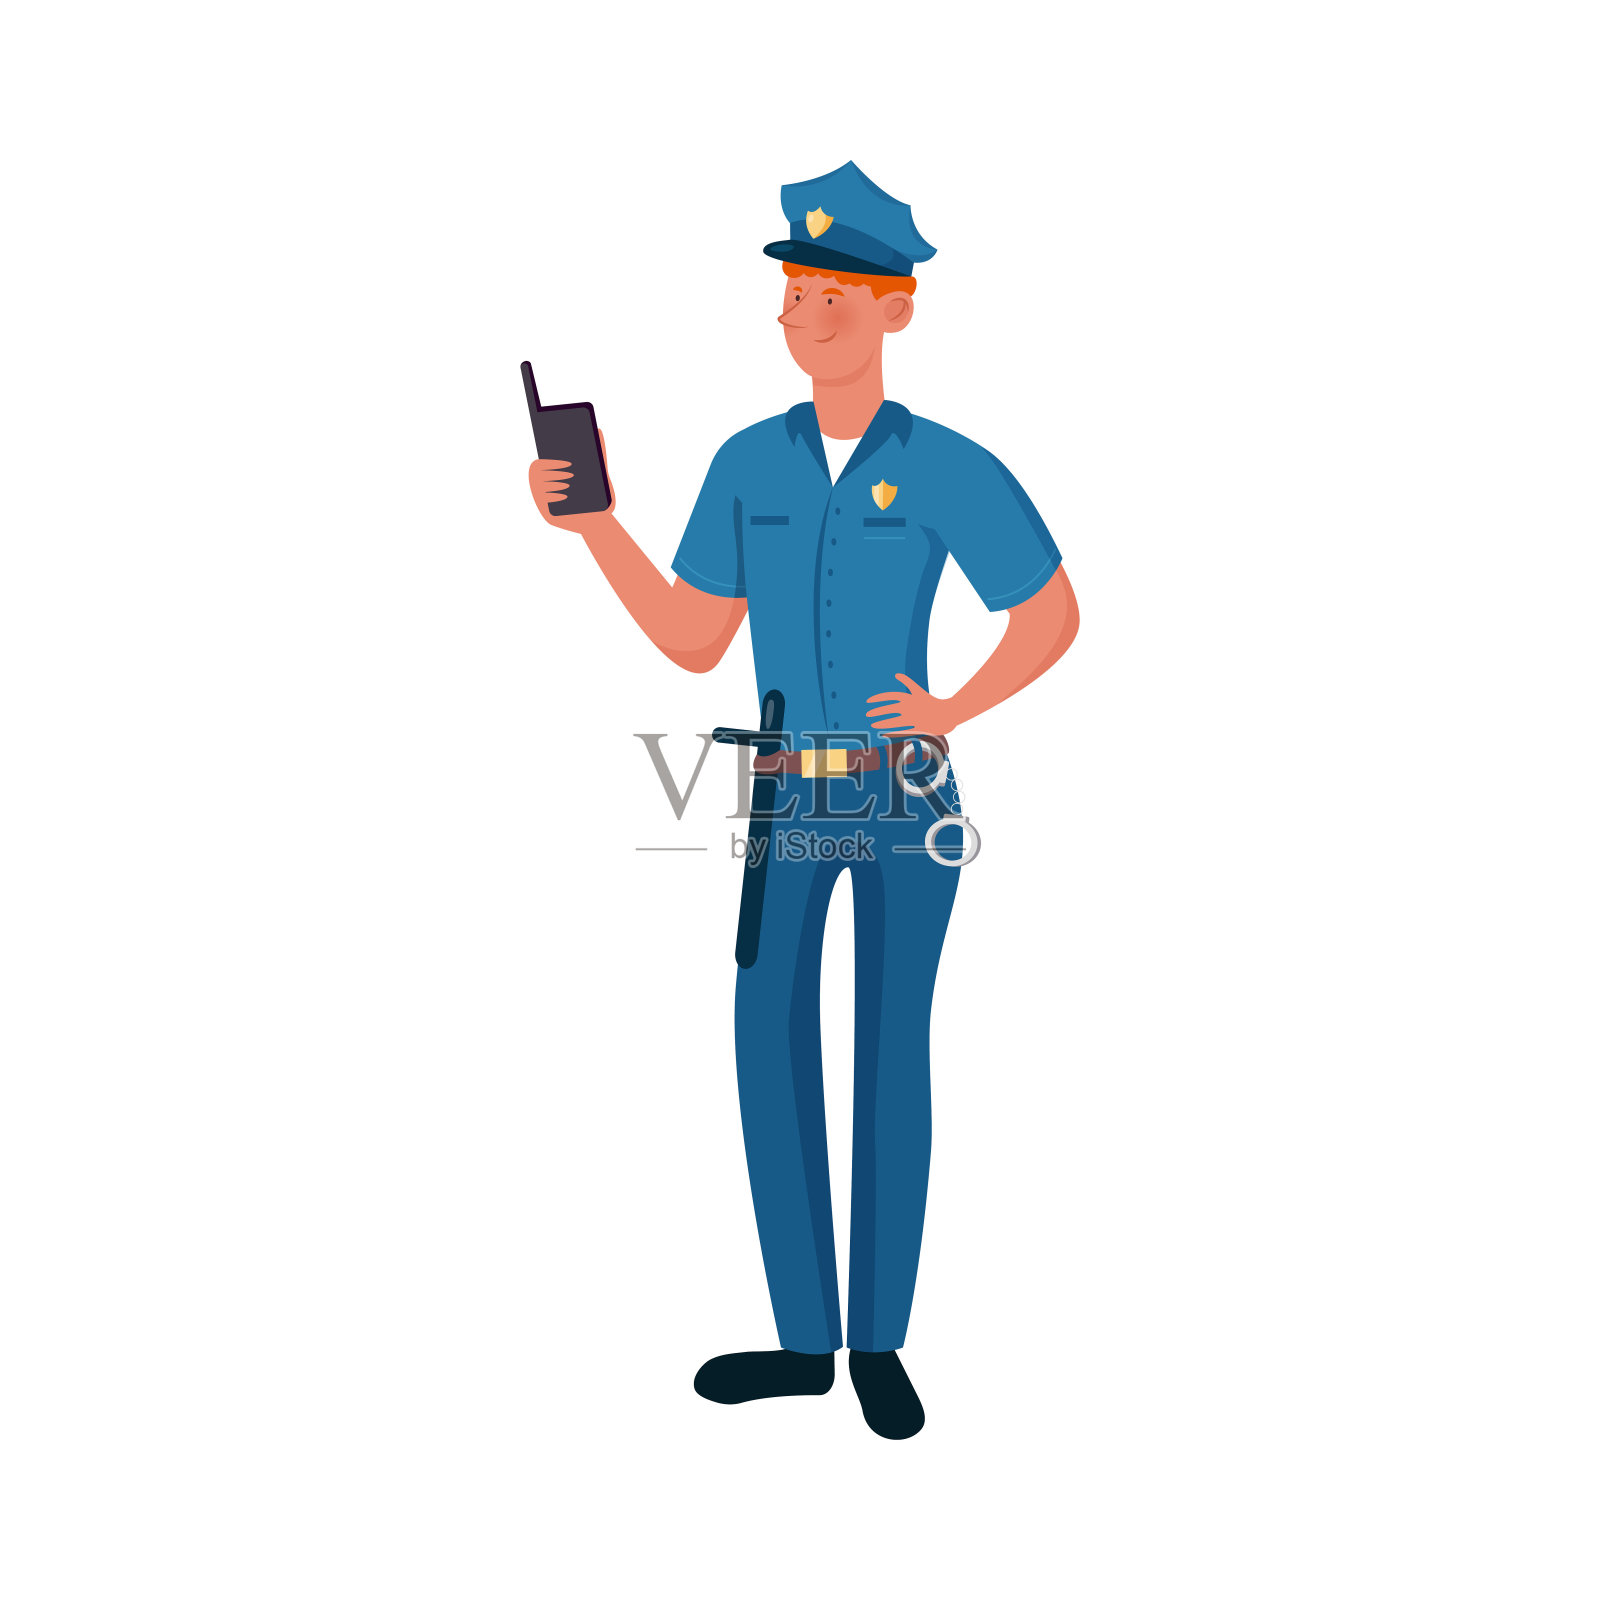 身穿蓝色制服的警察拿着对讲机站着。矢量插图孤立在白色背景插画图片素材